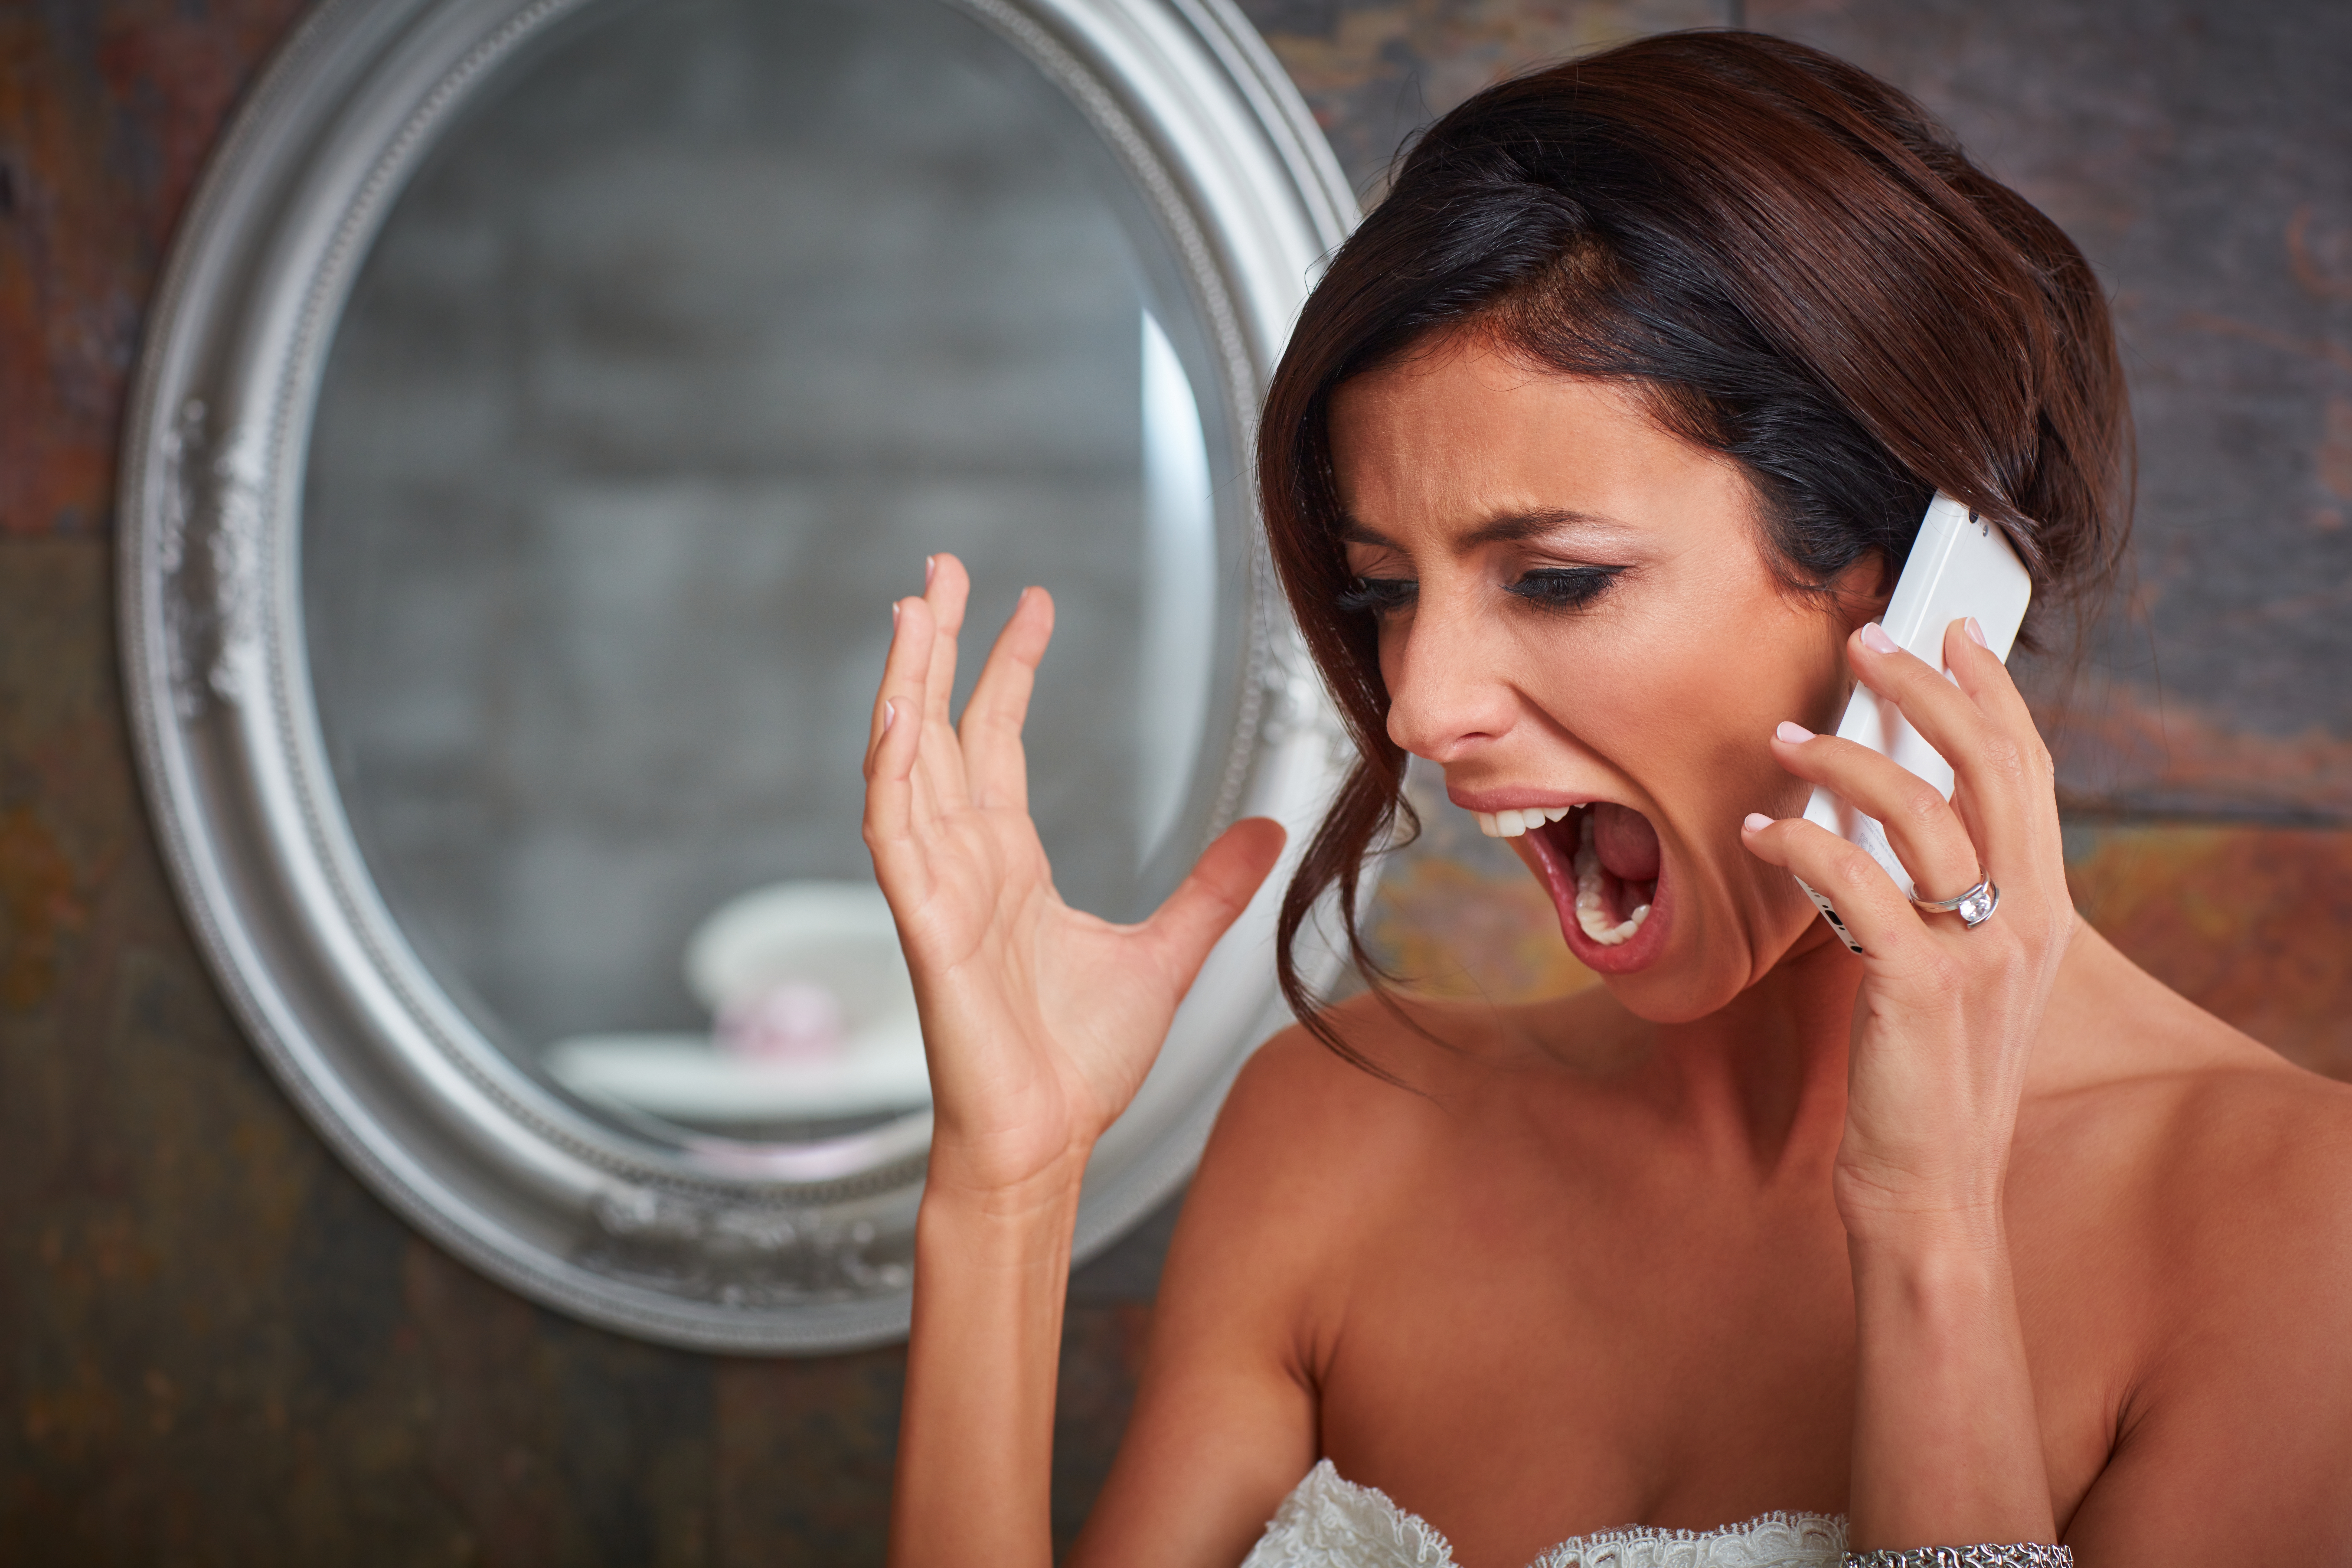 Eine schreiende Braut, während sie telefoniert | Quelle: Shutterstock